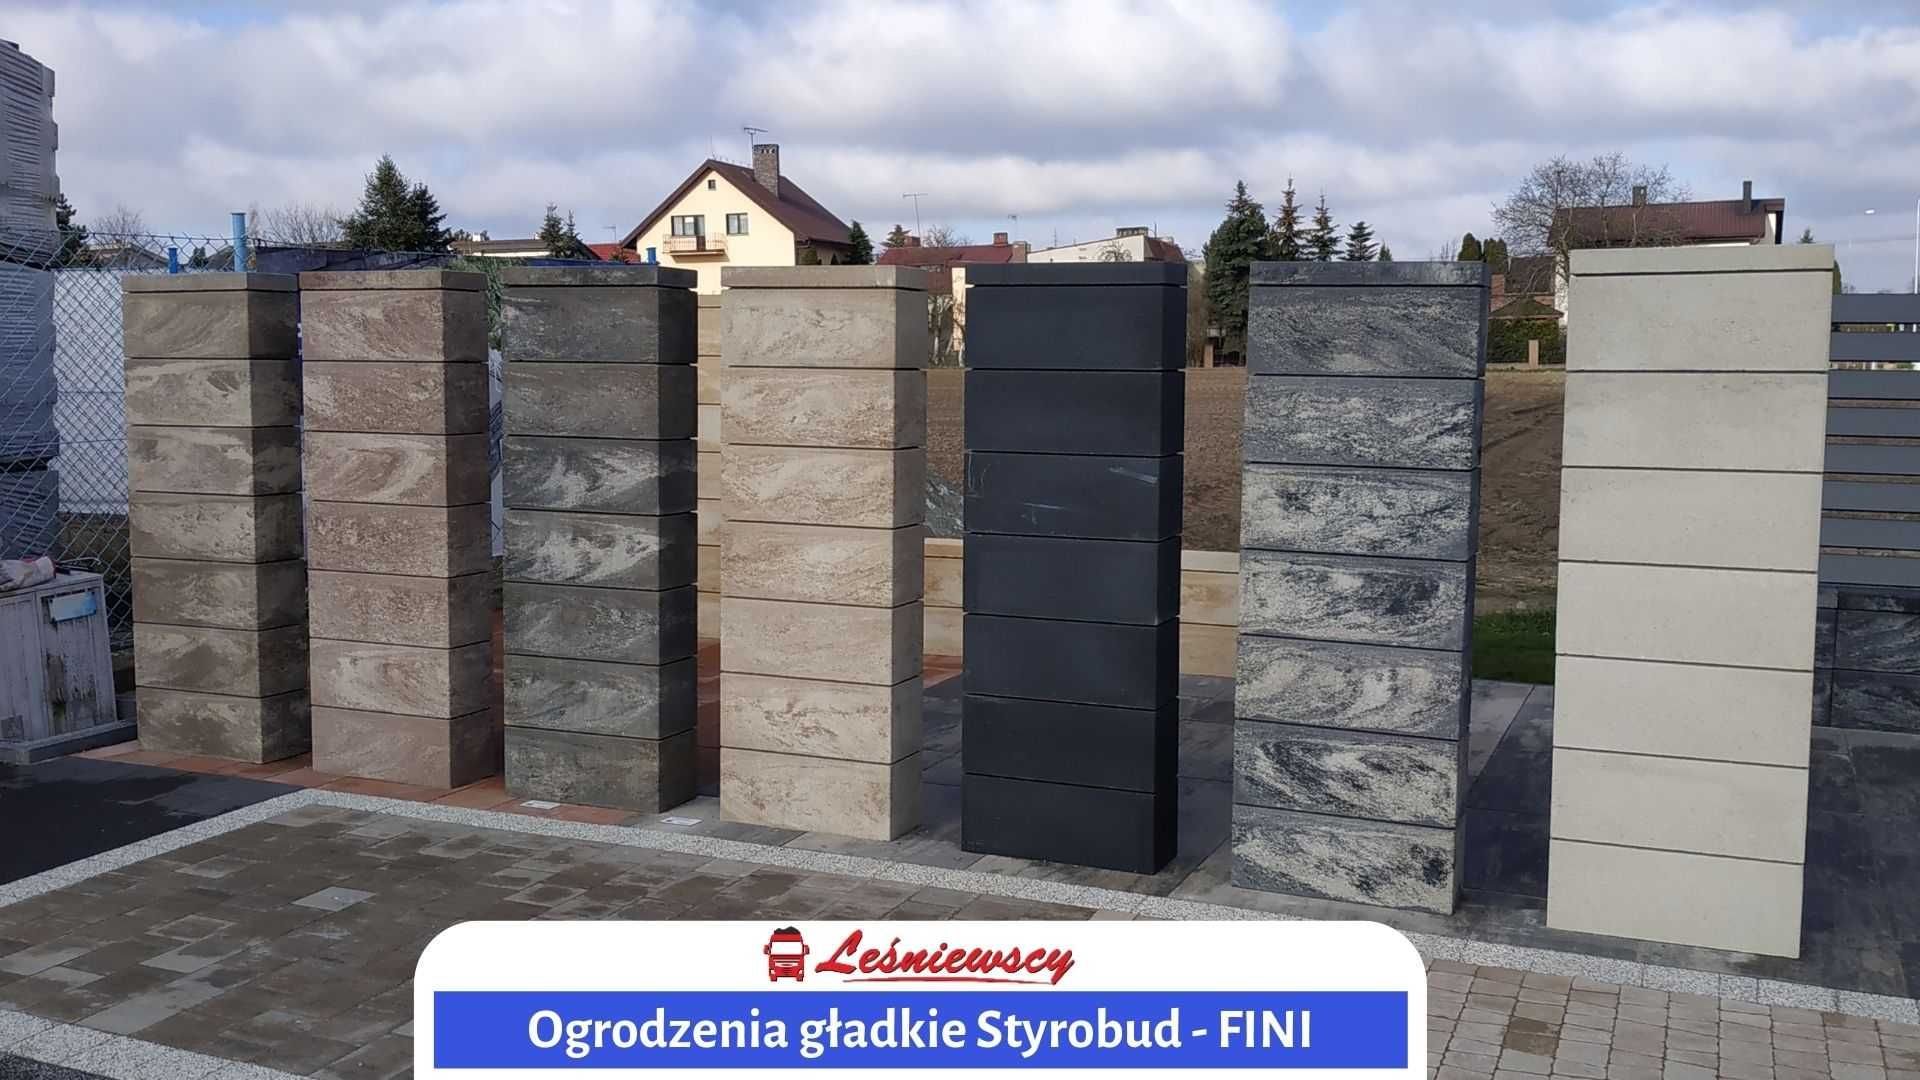 Betonowe ogrodzenie gładkie (modułowe)FINI-Styrobud nowoczesne OD RĘKI